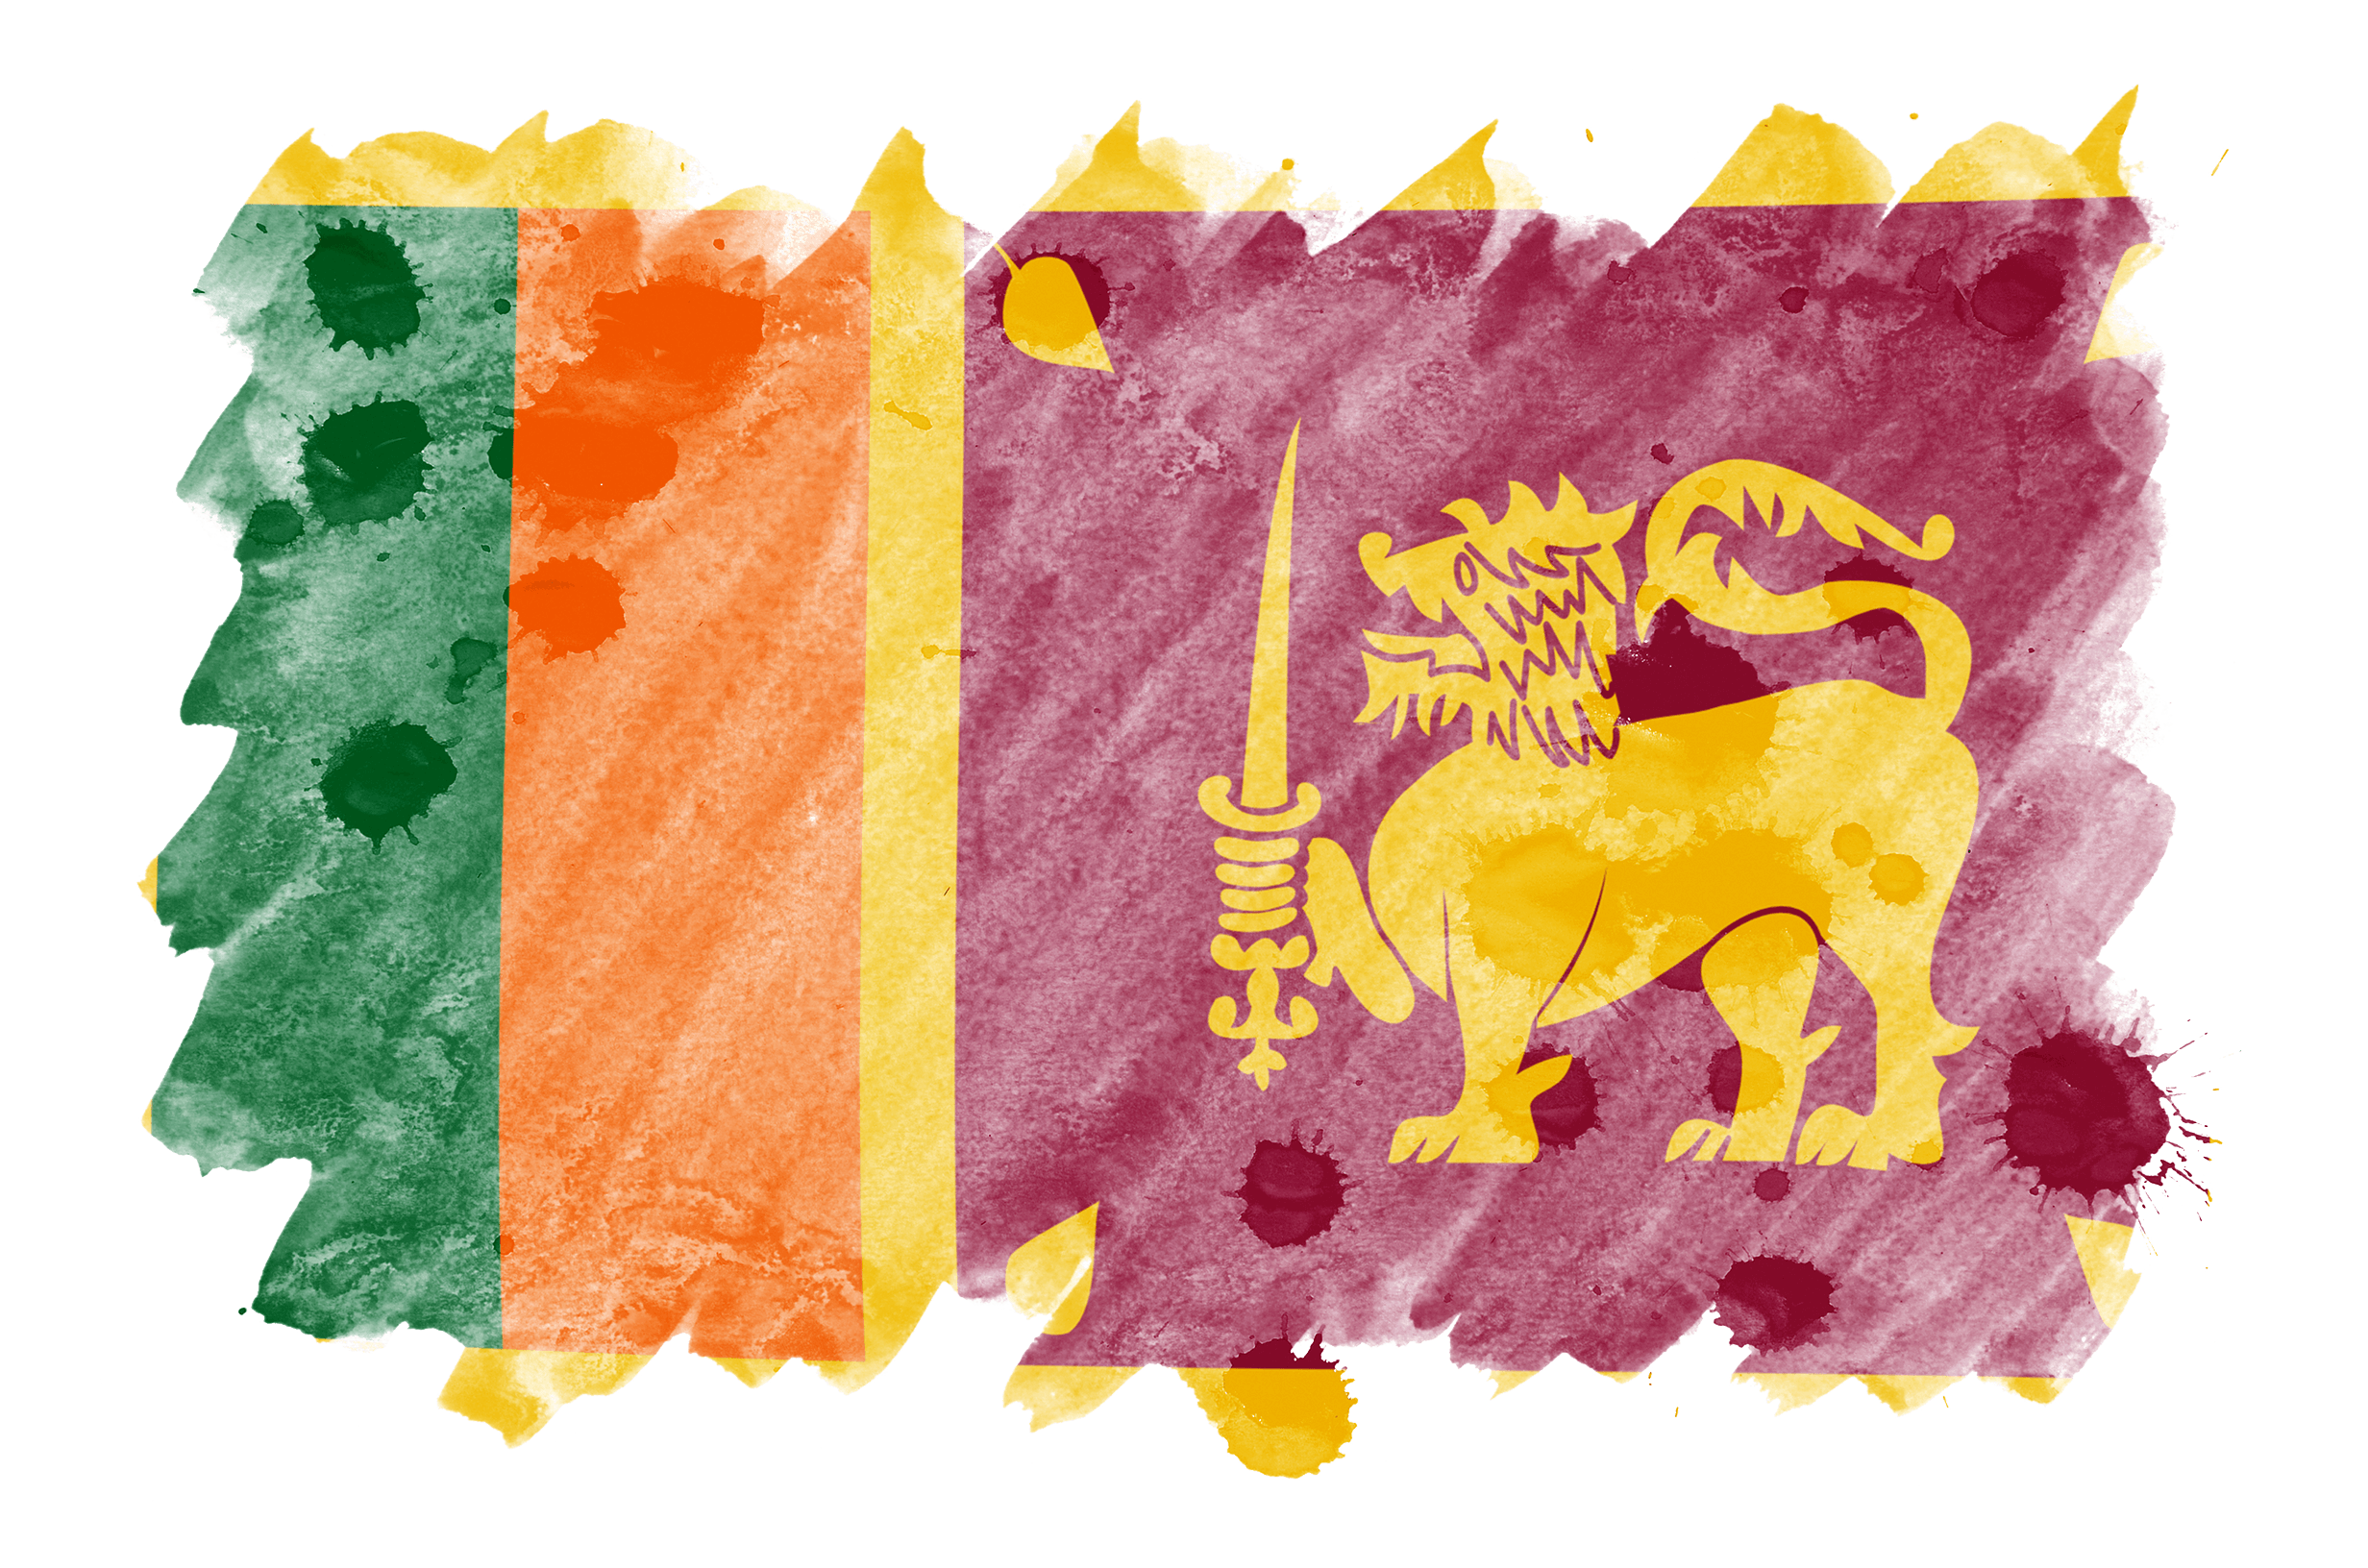 Bandera de Sri Lanka representada en estilo acuarela líquida.